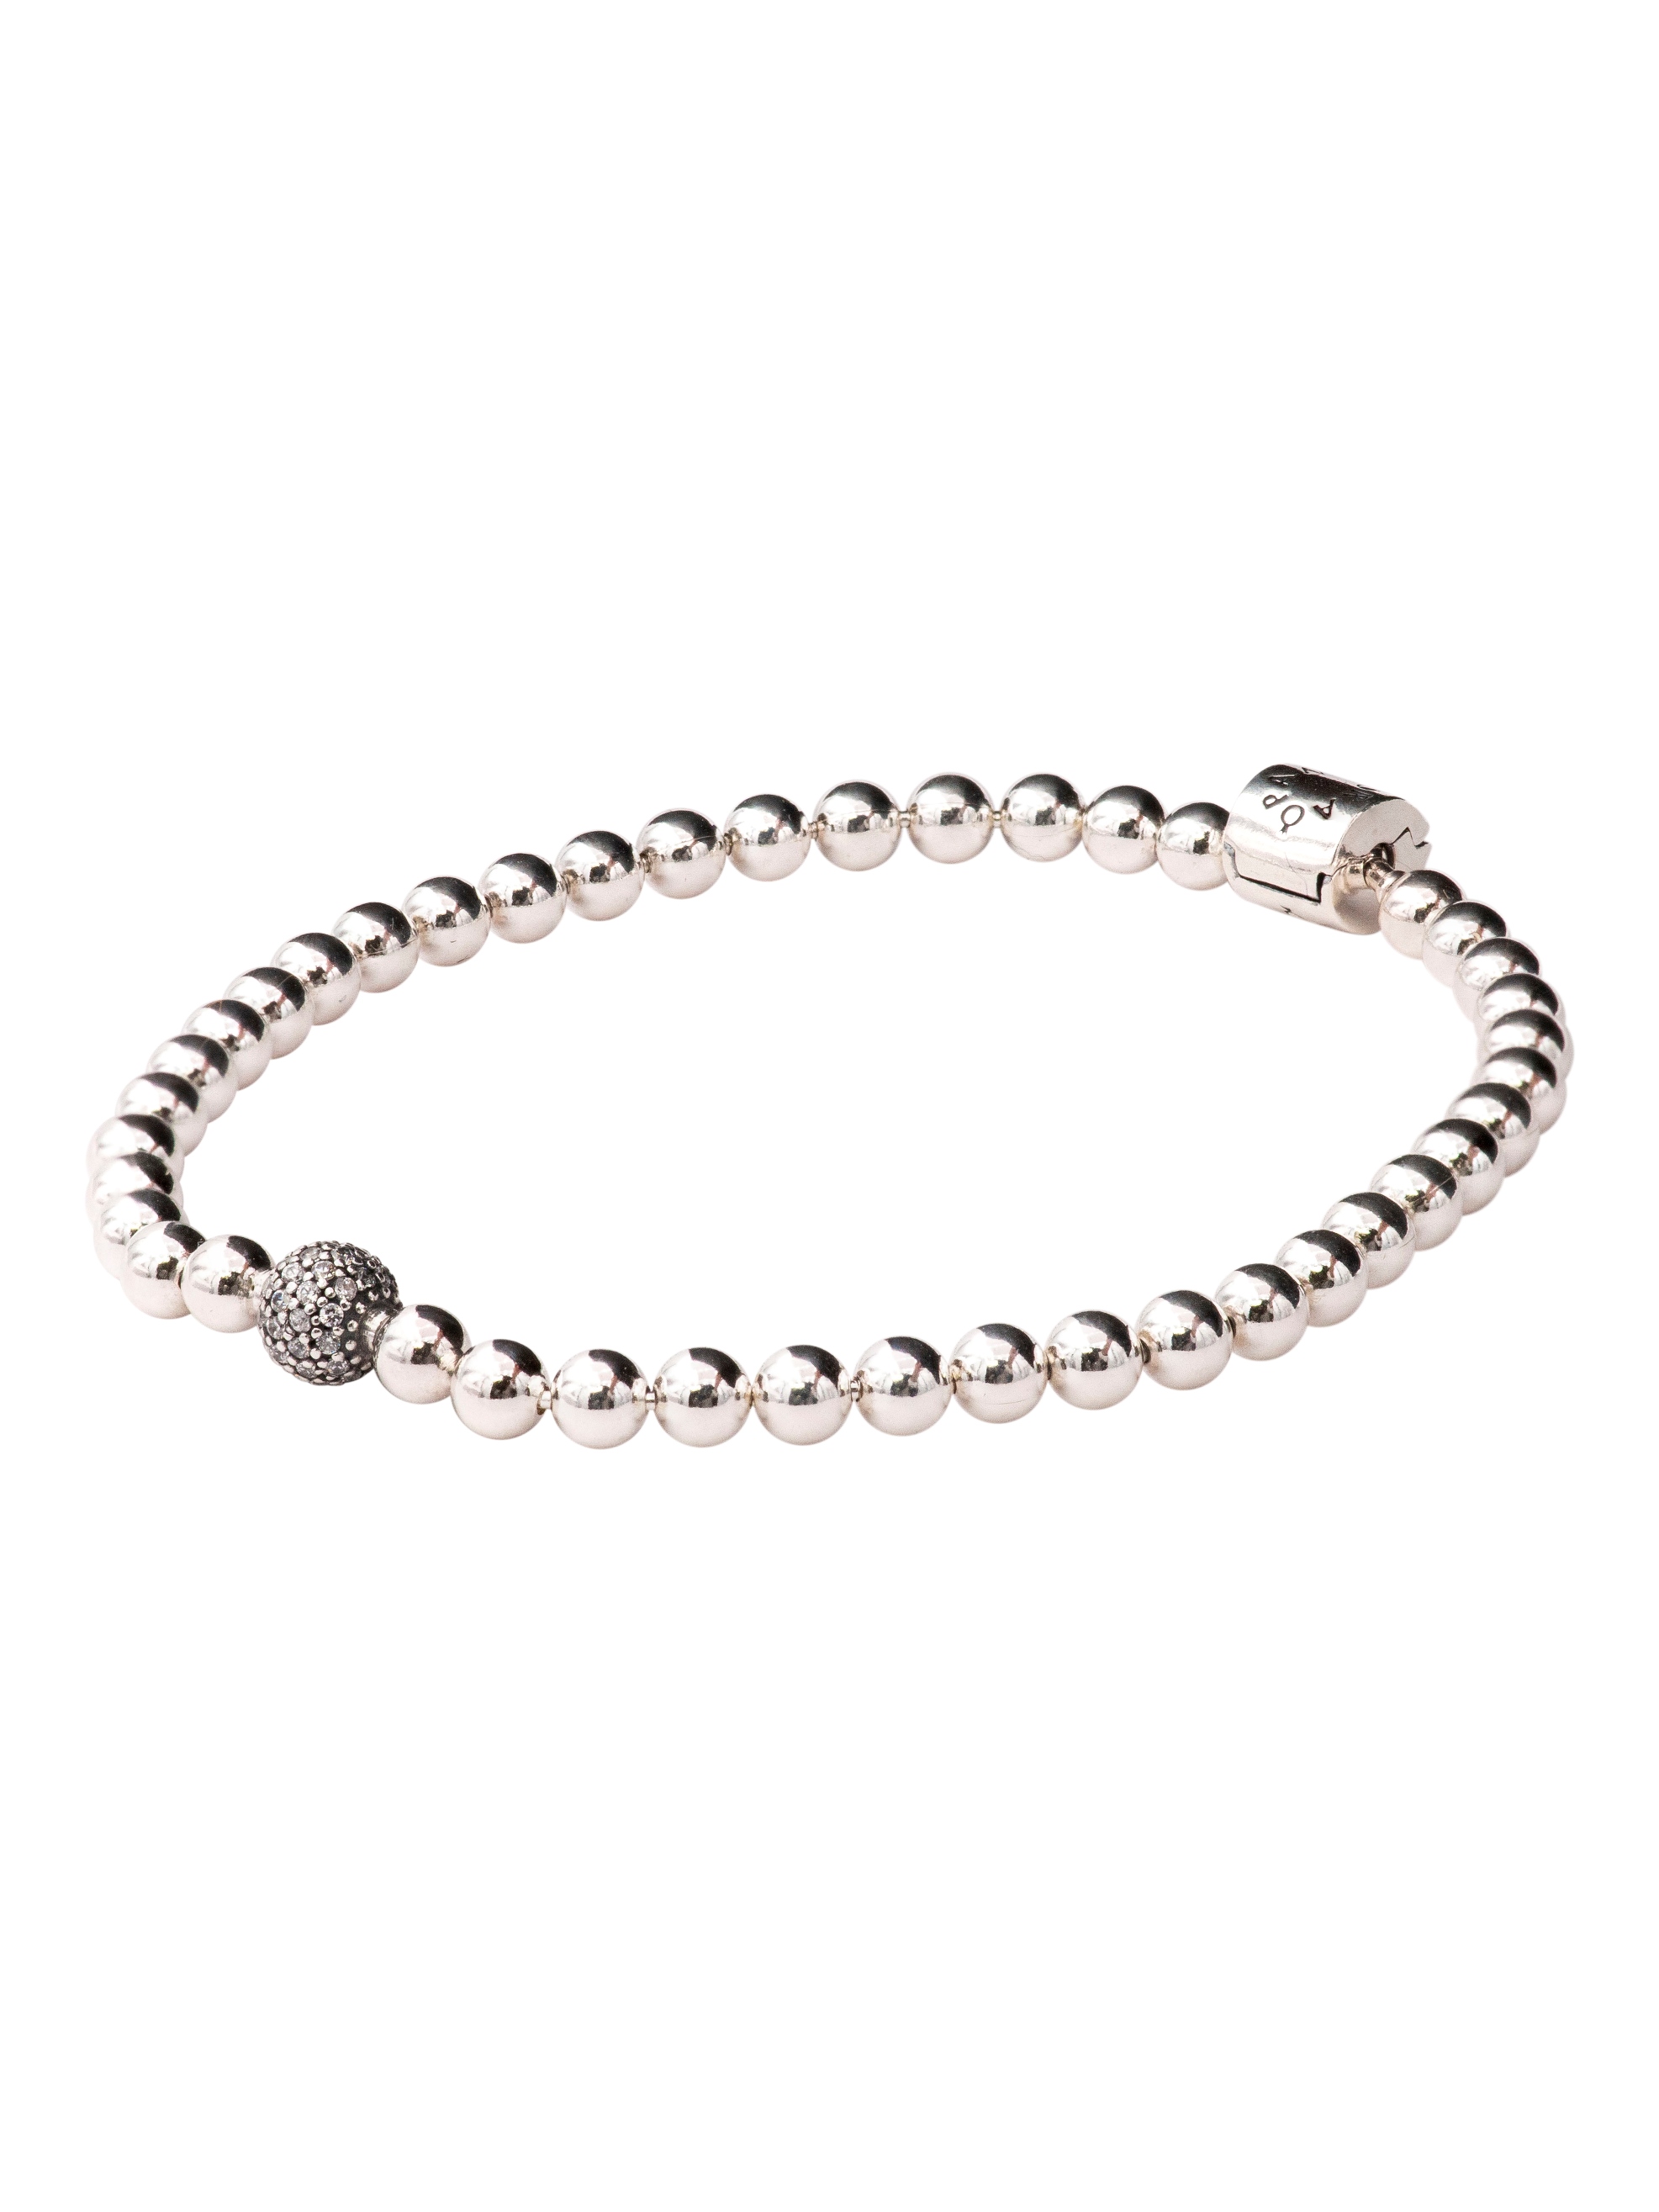 PANDORA Beads & Pave Bracelet Size 21 - 598342CZ-21